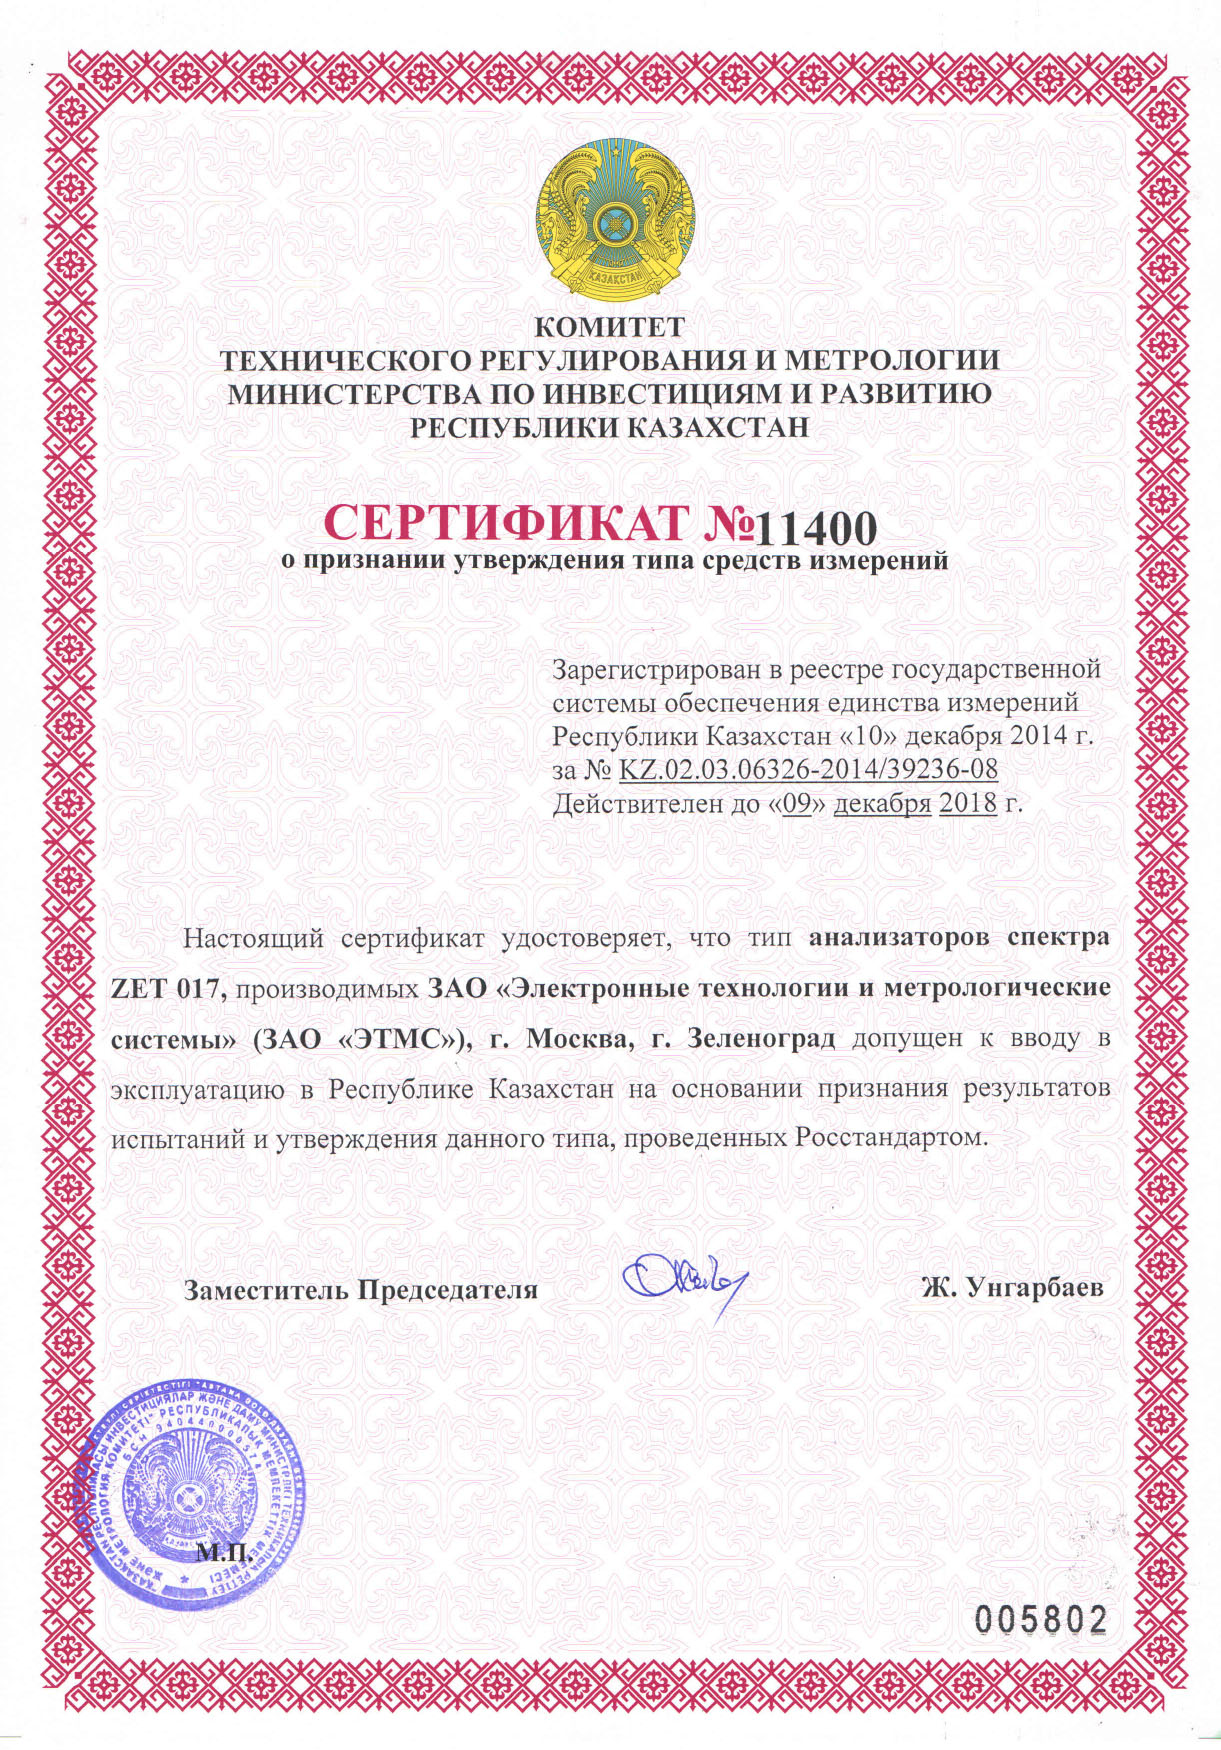 Сертификат о признании утверждения типа средств измерений анализаторов спектра ZET 017 в республике Казахстан